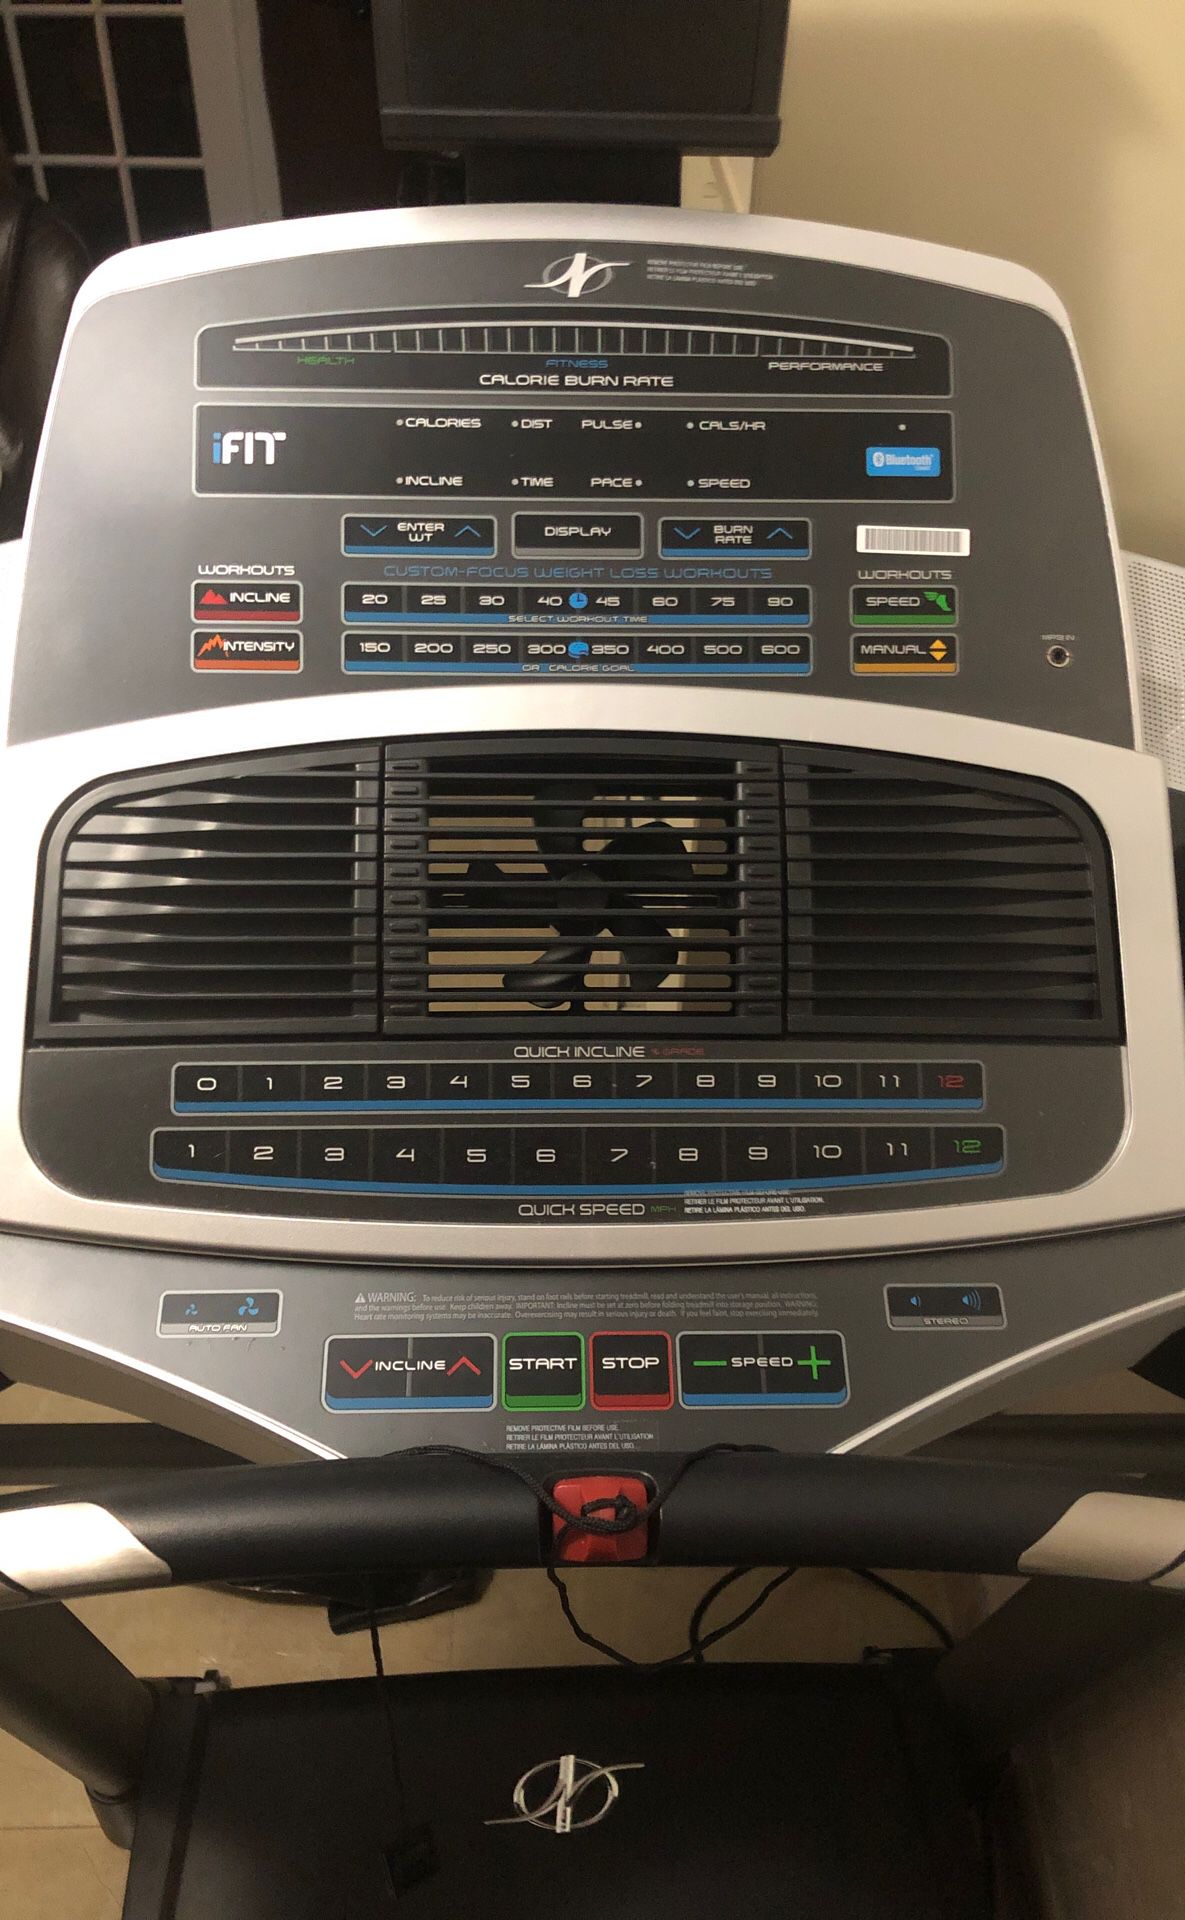 NordicTrack C950i Treadmill